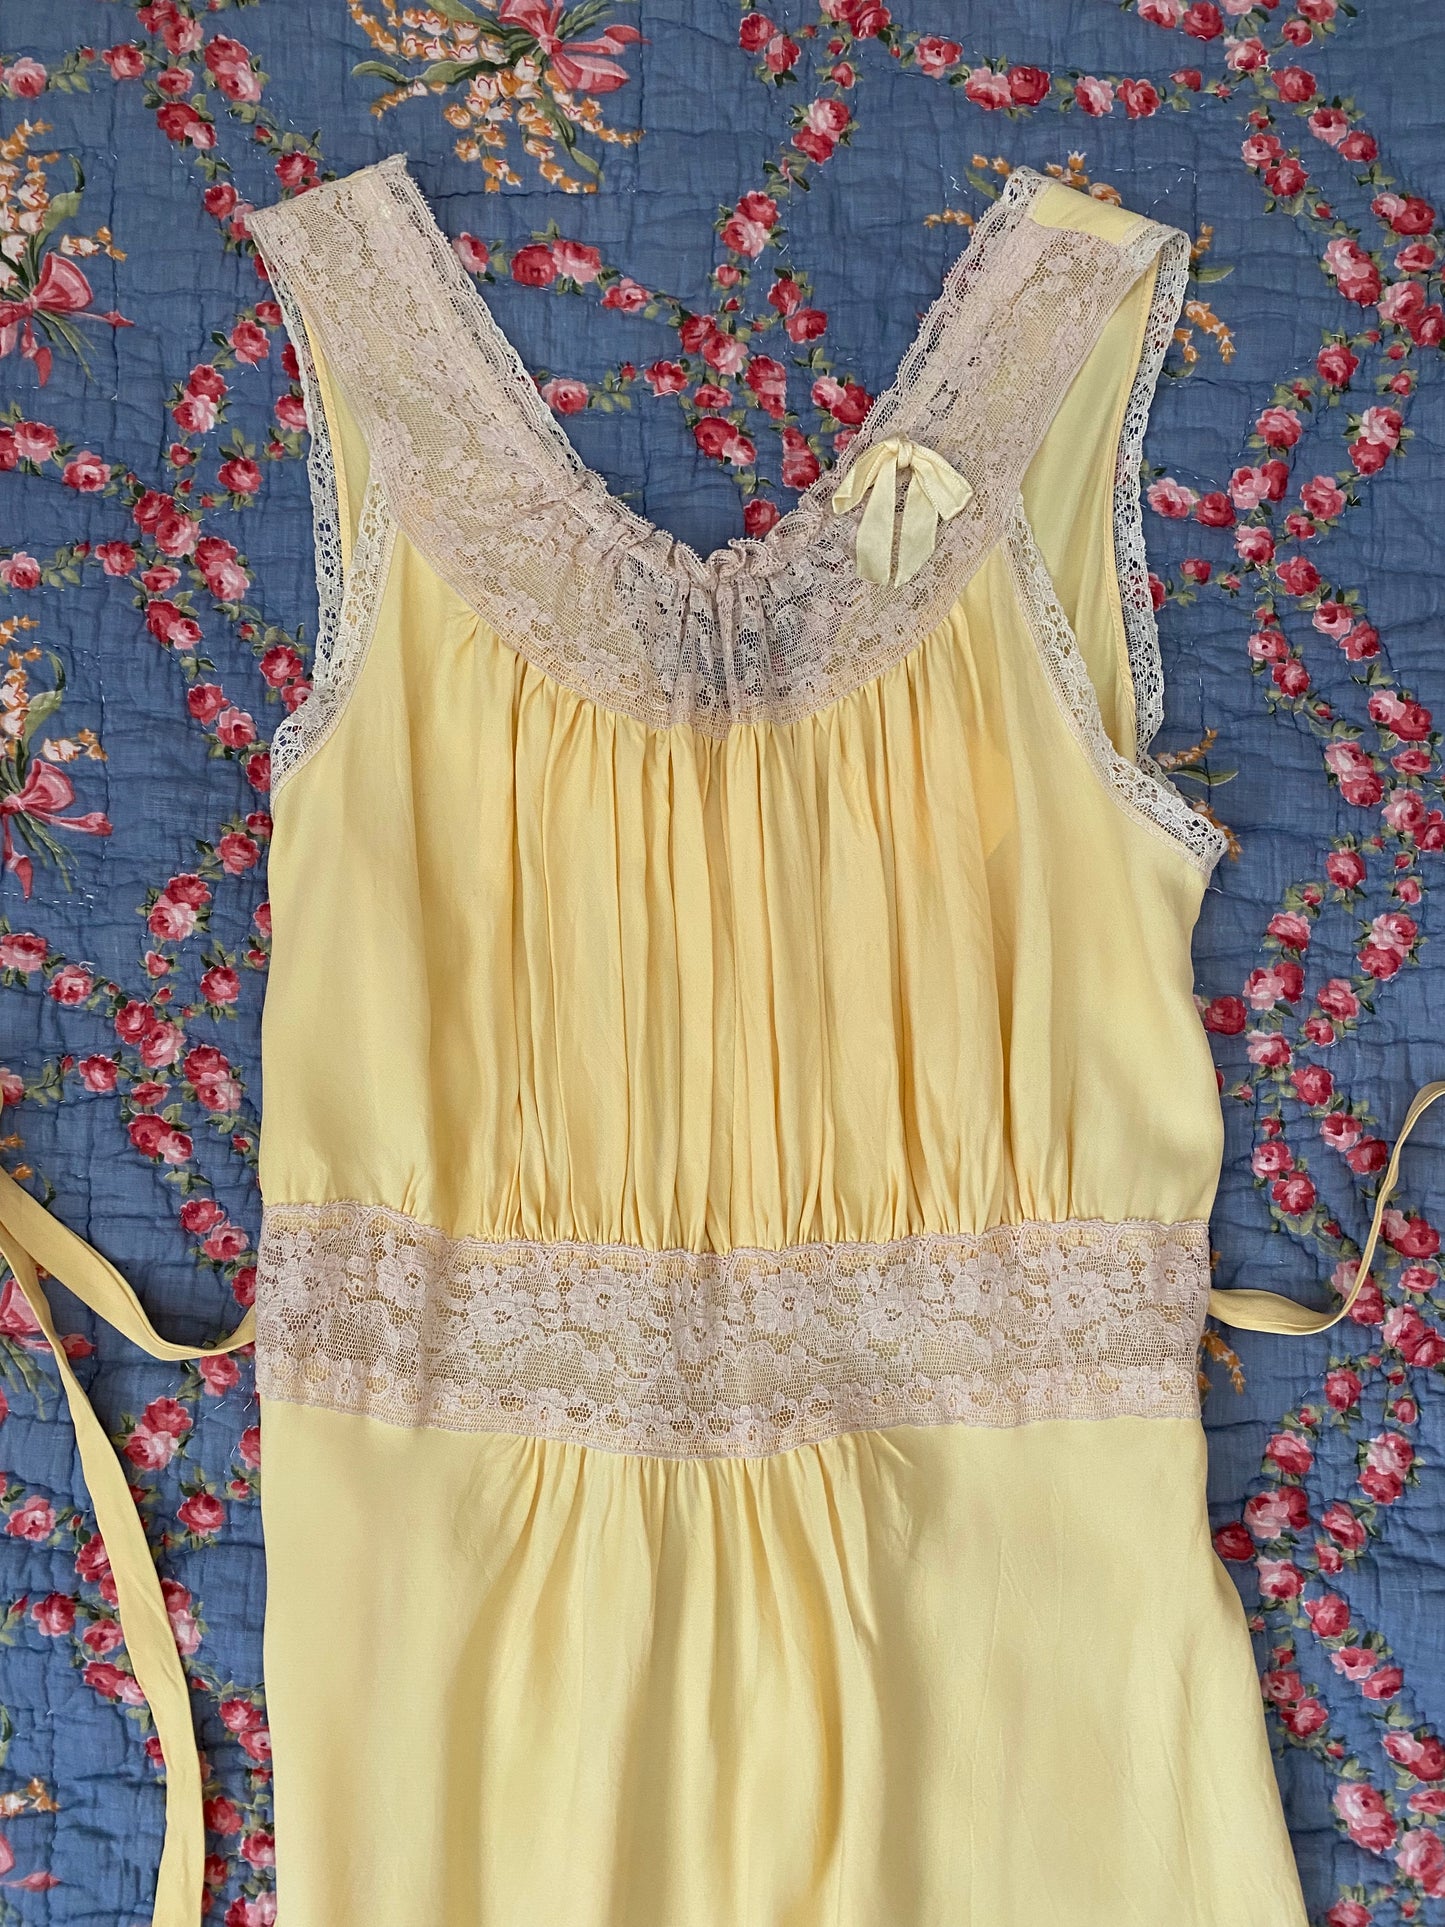 1940s Pale Yellow Rayon Bias Cut Slip w/ Lace + Bow- S/M